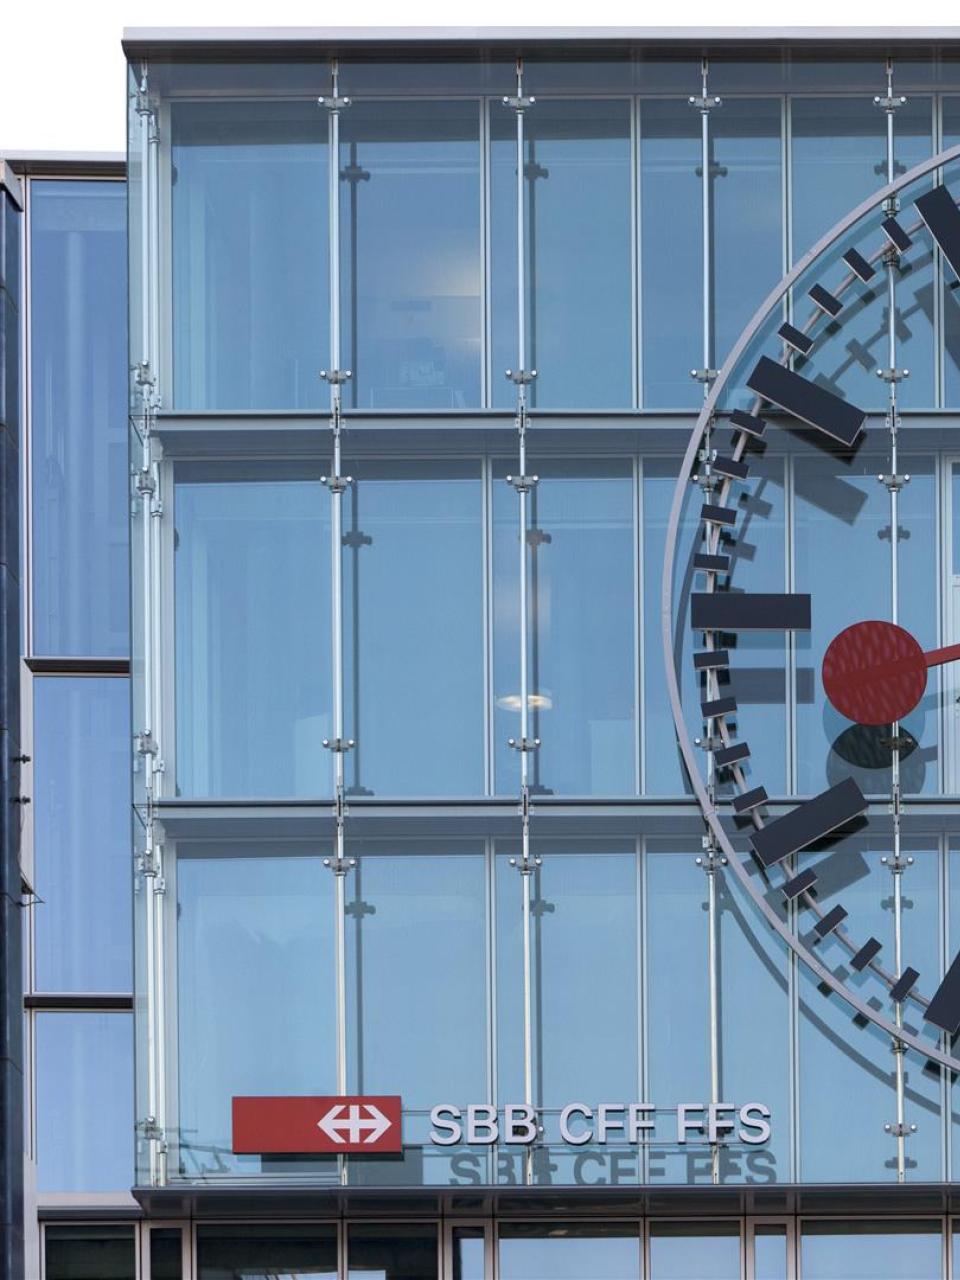 Il più grande orologio svizzero (9 metri di diametro) si trova alla stazione di Aarau